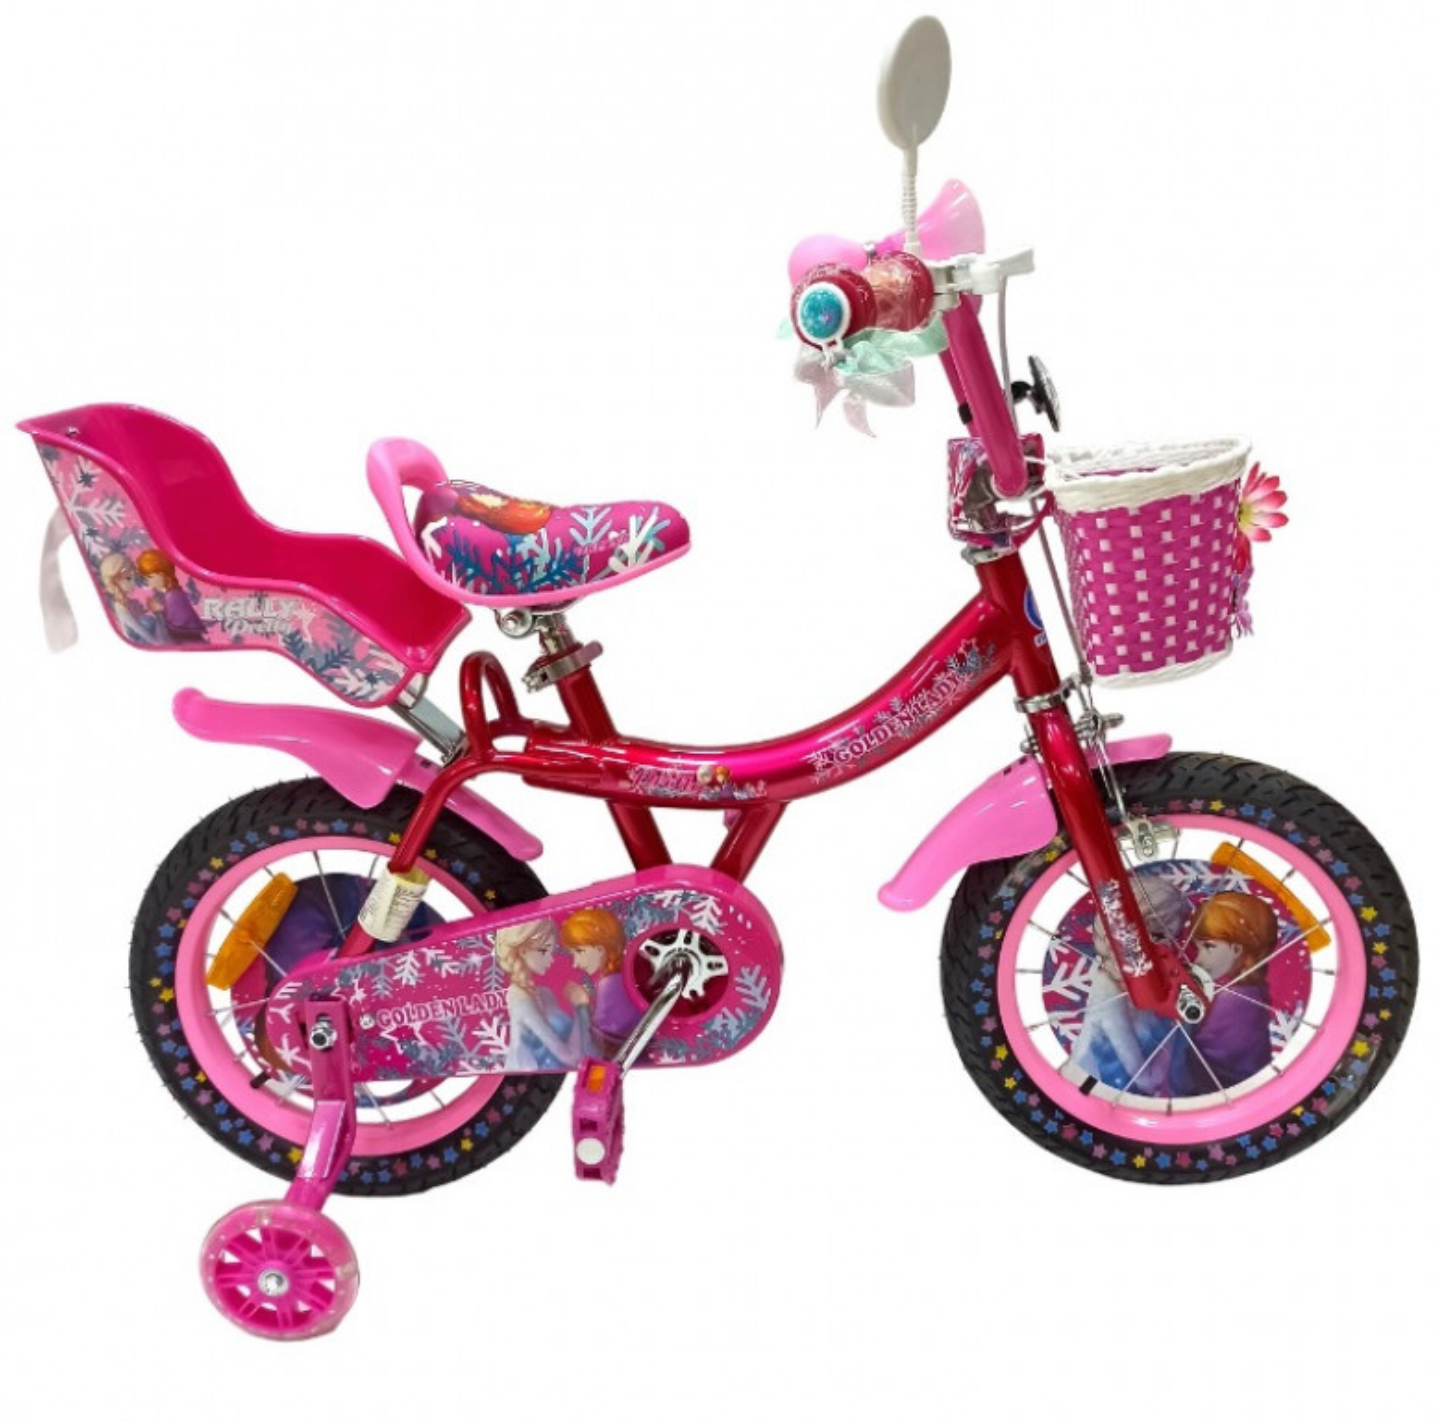 Велосипед с диаметров колес 14 дюймов велосипед для девочек красивый велосипед велосипед с корзинкой OSCAR GOLDEN LADY